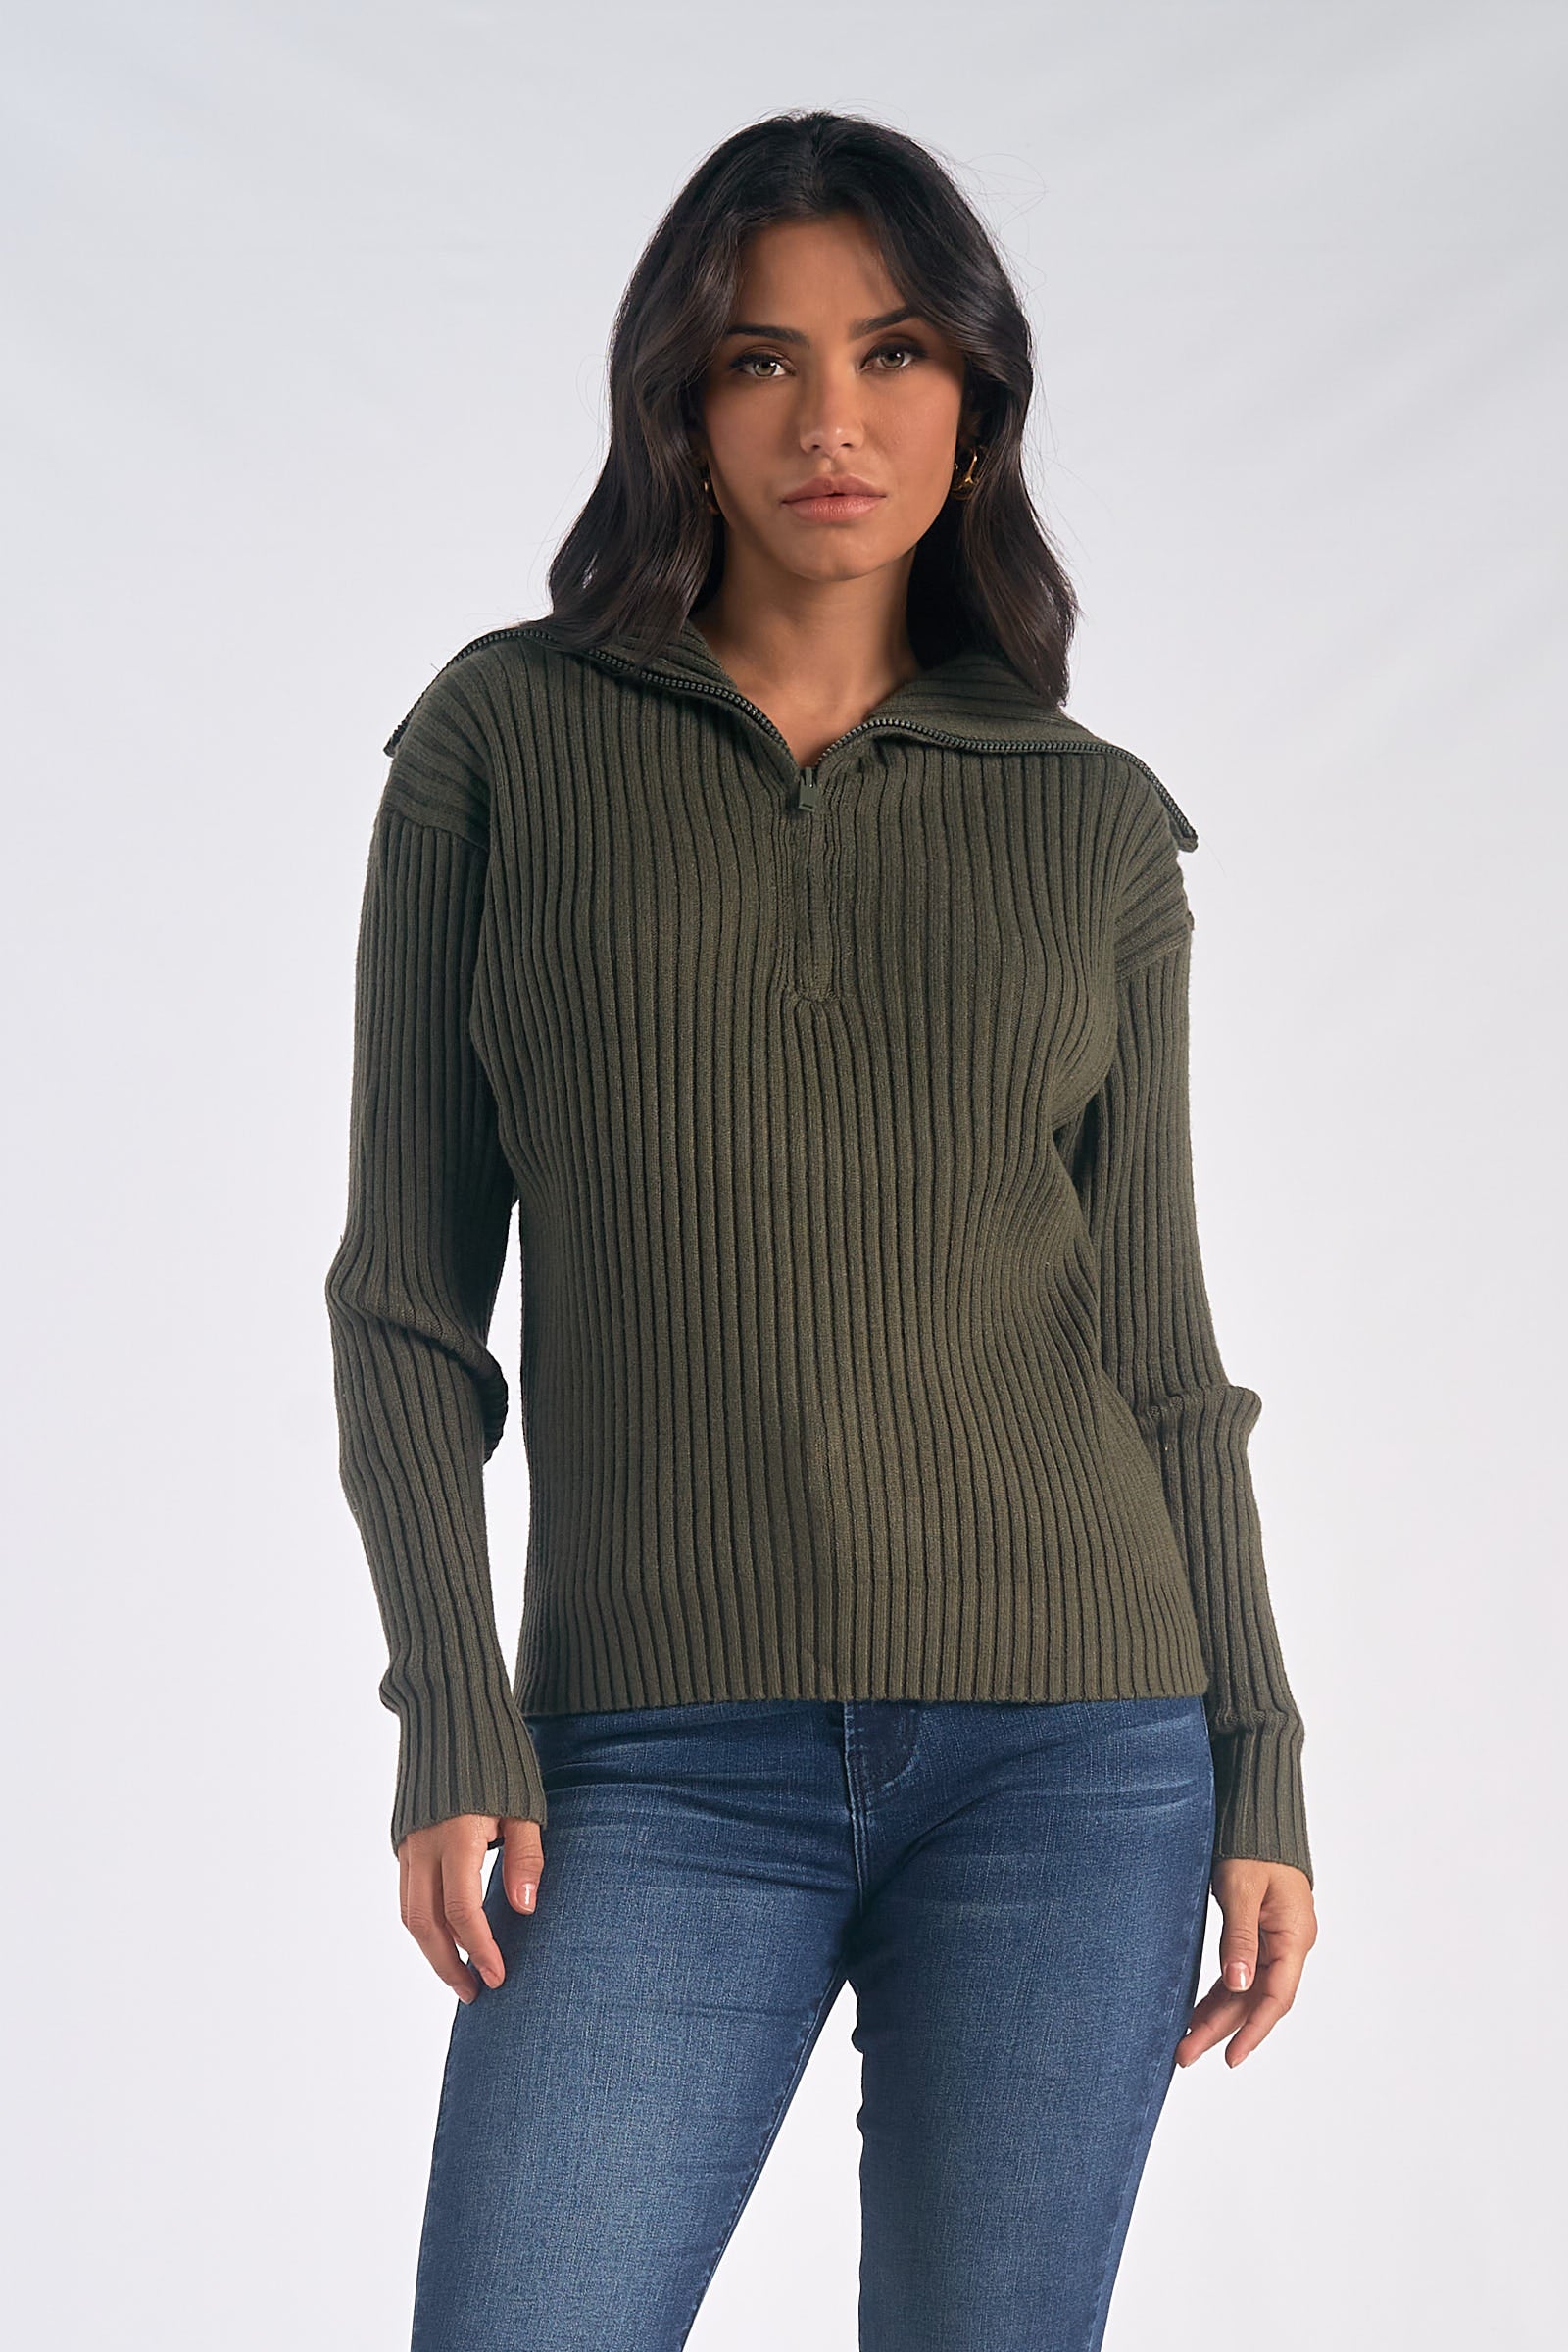 Willow Sweater - Shop Elan